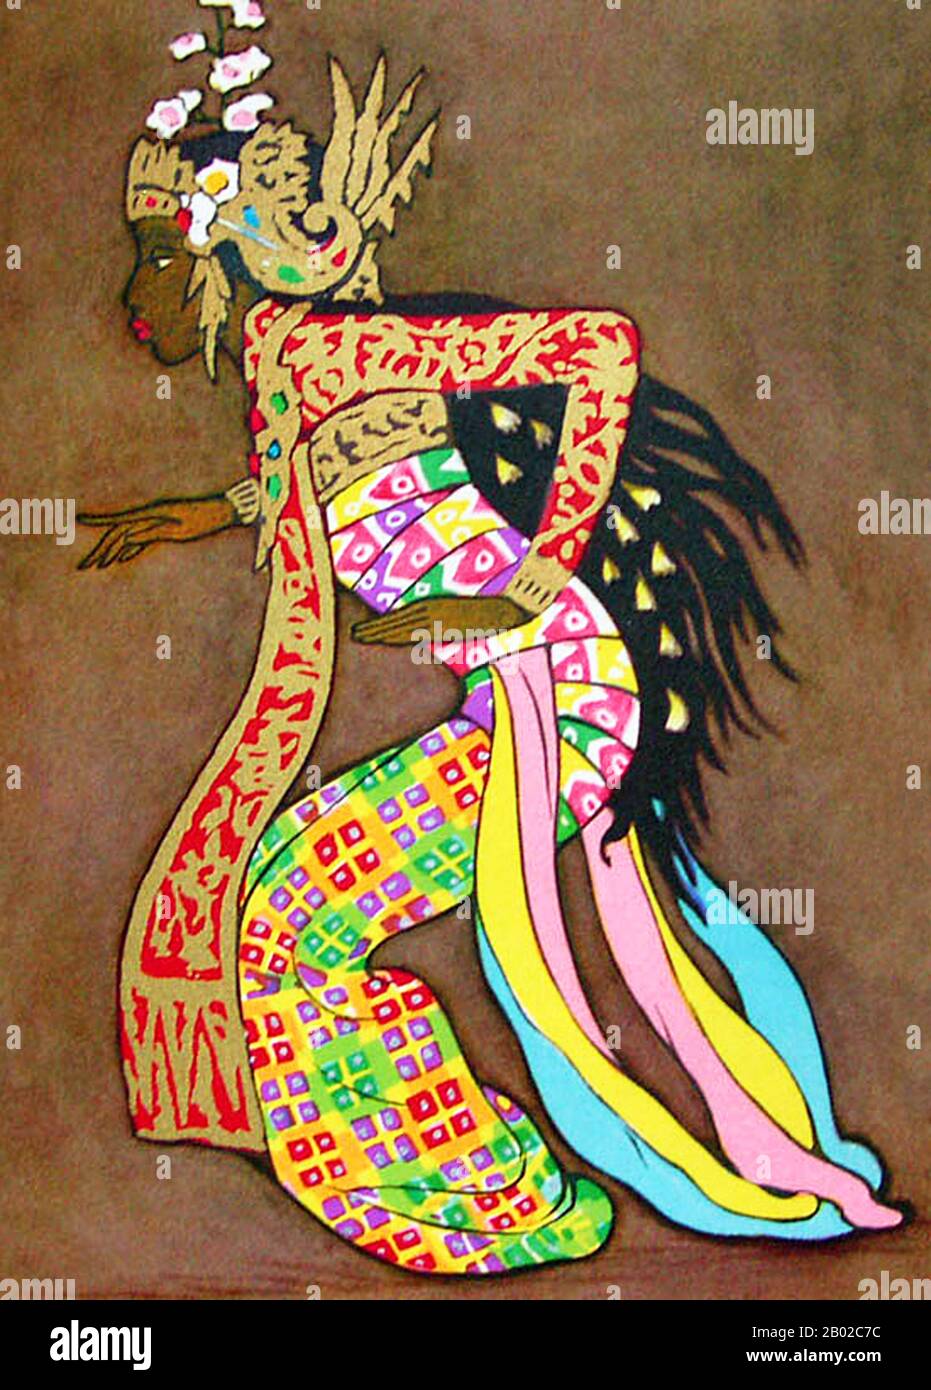 Tyra Kleen, a volte scritto Thyra, nato il 29 marzo 1874 a Stoccolma, morì nel 1951, era un artista e scrittore svedese. Le sue illustrazioni possono essere firmate T.Kn. La danza Balinese è una tradizione di danza molto antica che fa parte dell'espressione religiosa e artistica tra il popolo Balinese, nativo dell'isola di Bali, Indonesia. La danza balinese è dinamica, angolare e intensamente espressiva. I ballerini balinesi esprimono la storia della danza-dramma attraverso i gesti del corpo intero; le dita, le mani e i gesti del corpo ai movimenti della testa e degli occhi. C'è una grande ricchezza di forme e stili di danza a Bali; e p. Foto Stock